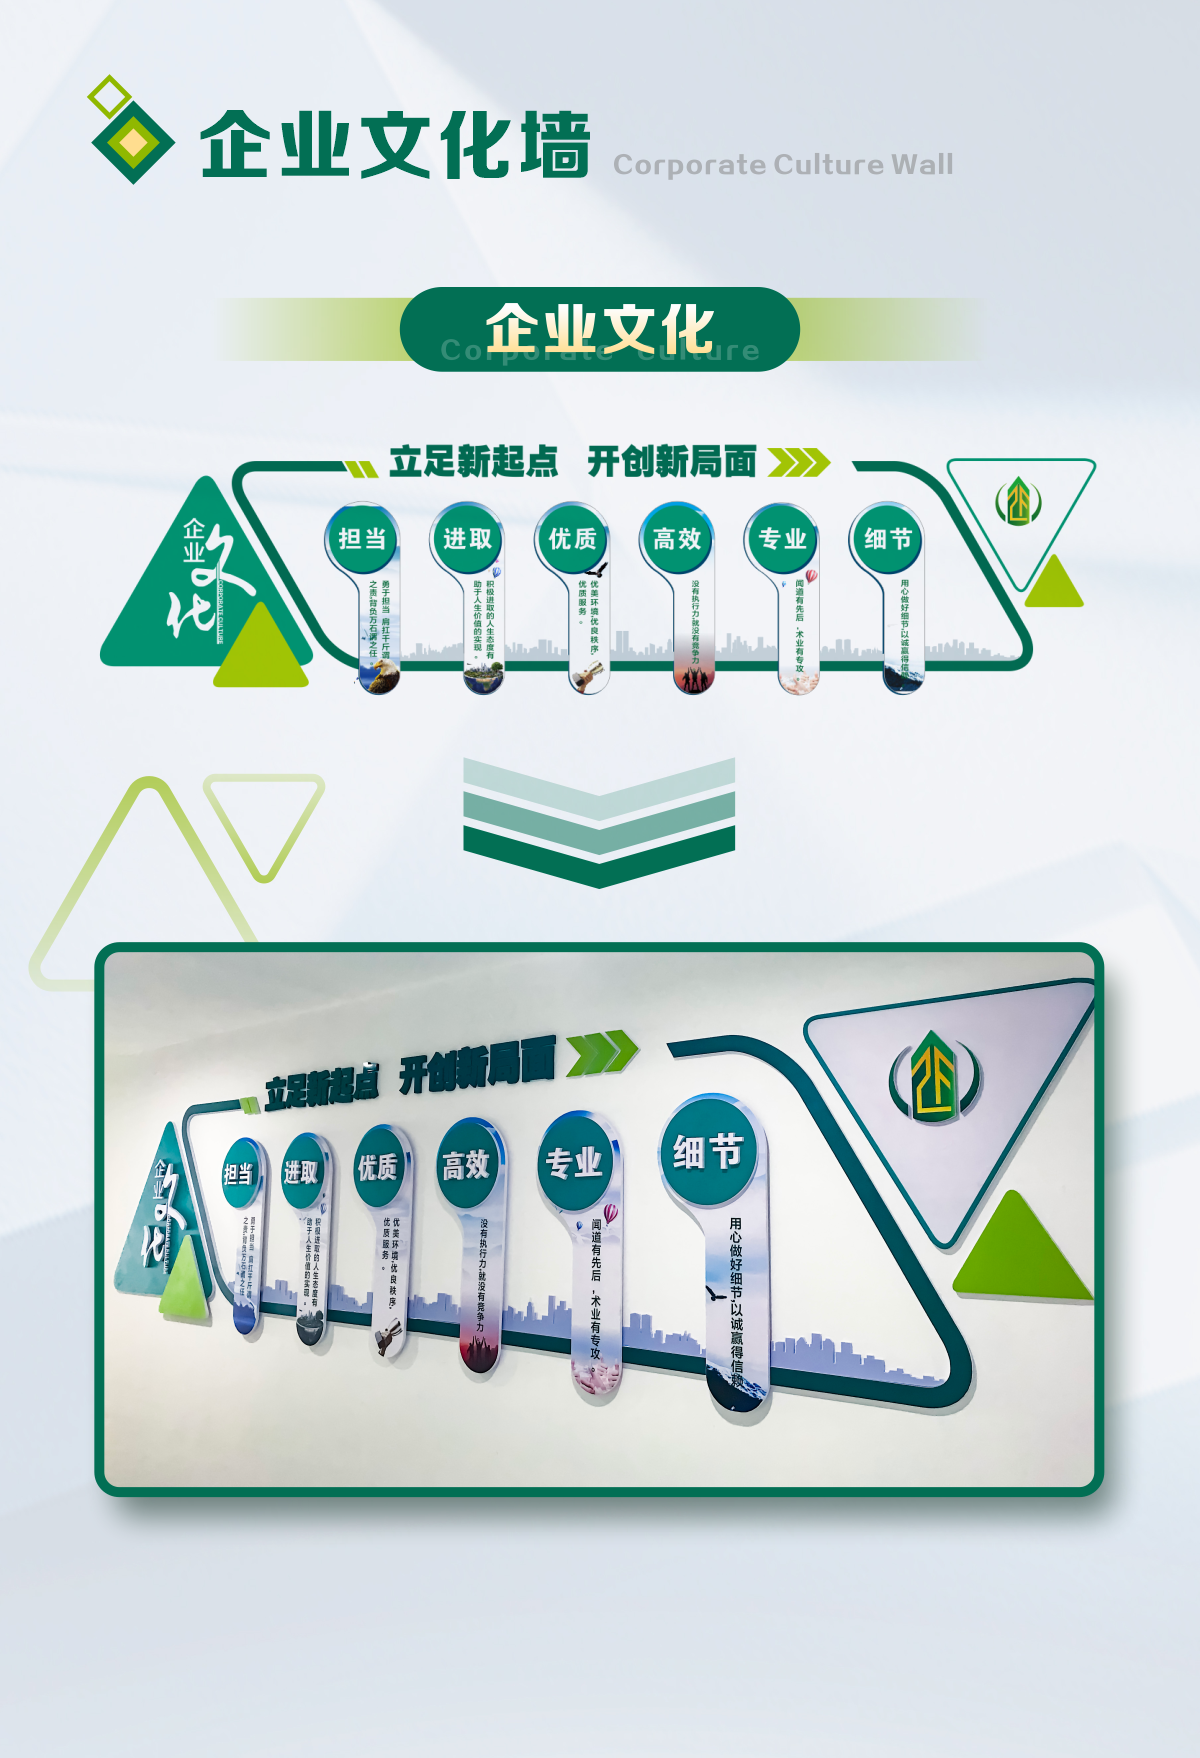 广西正峰工程项目管理咨询有限公司文化墙设计制作_03.png